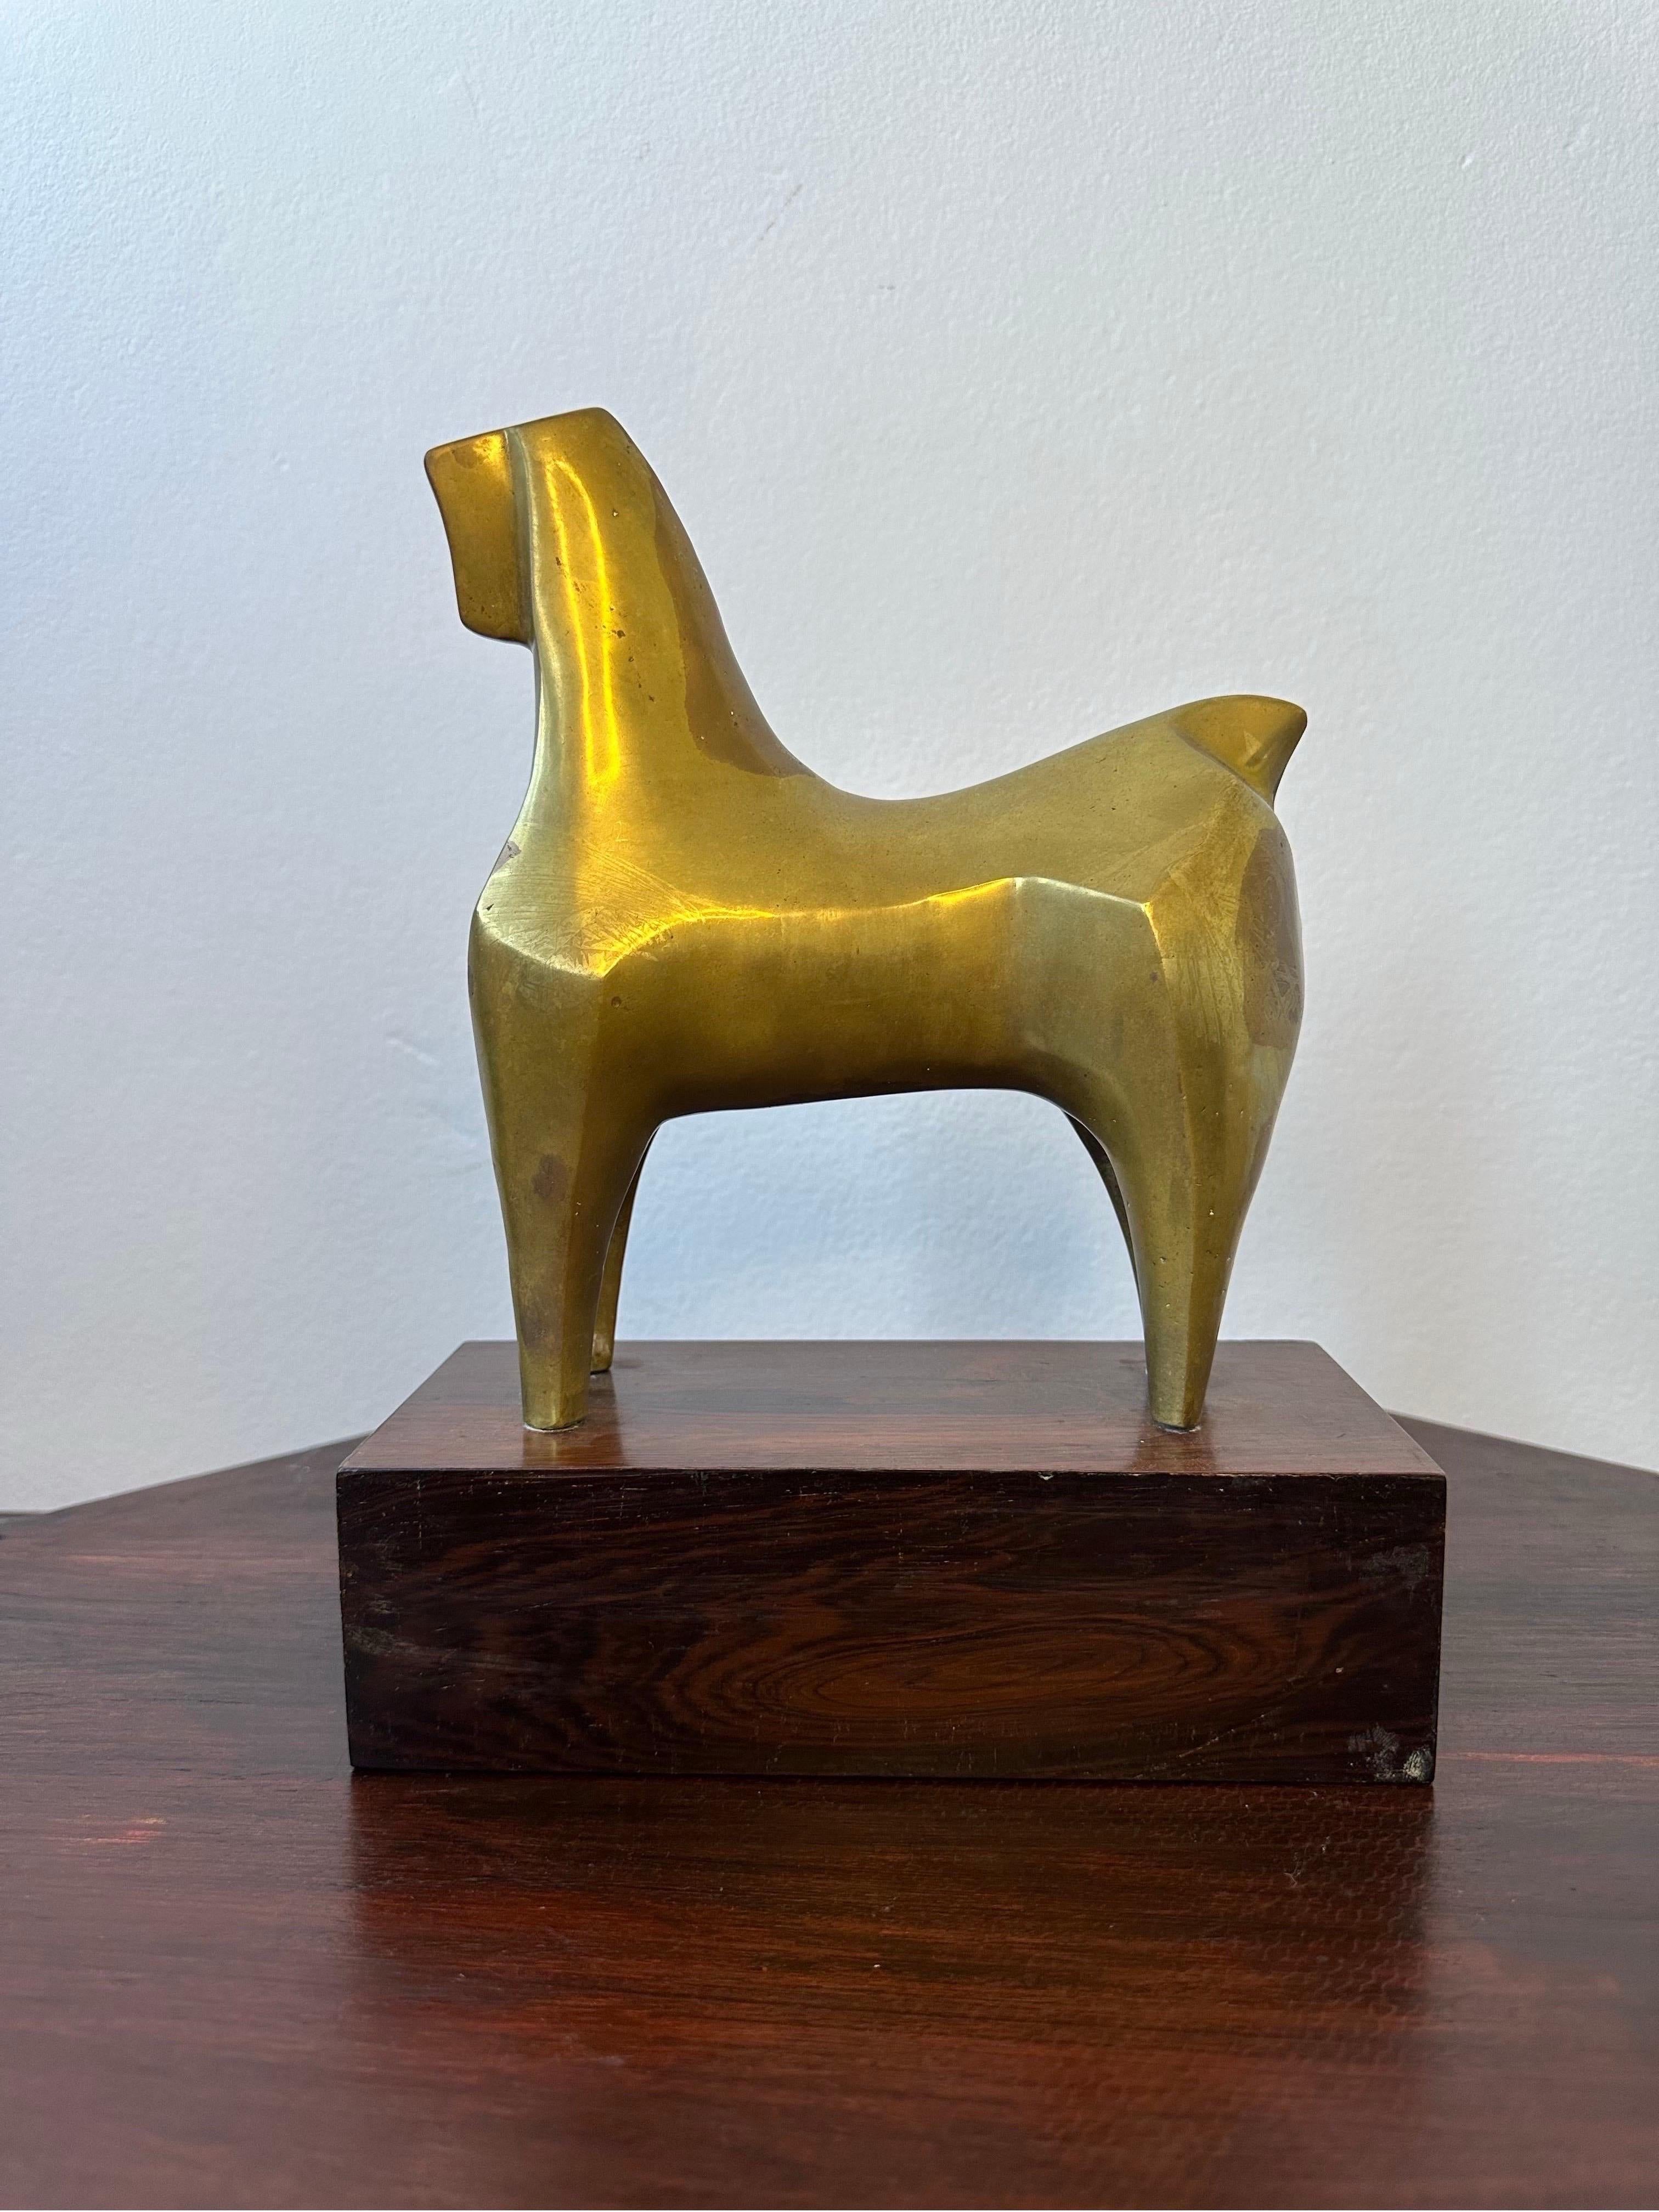 Brasilianische modernistische Bronzeskulptur eines Pferdes auf einem Jacaranda-Sockel, ca. 1960er Jahre.  Das geometrische Bronzepferd mit hohlem Kern ist ein Zeugnis der modernistischen Kunstbewegung in Brasilien in den 1960er Jahren.  Das